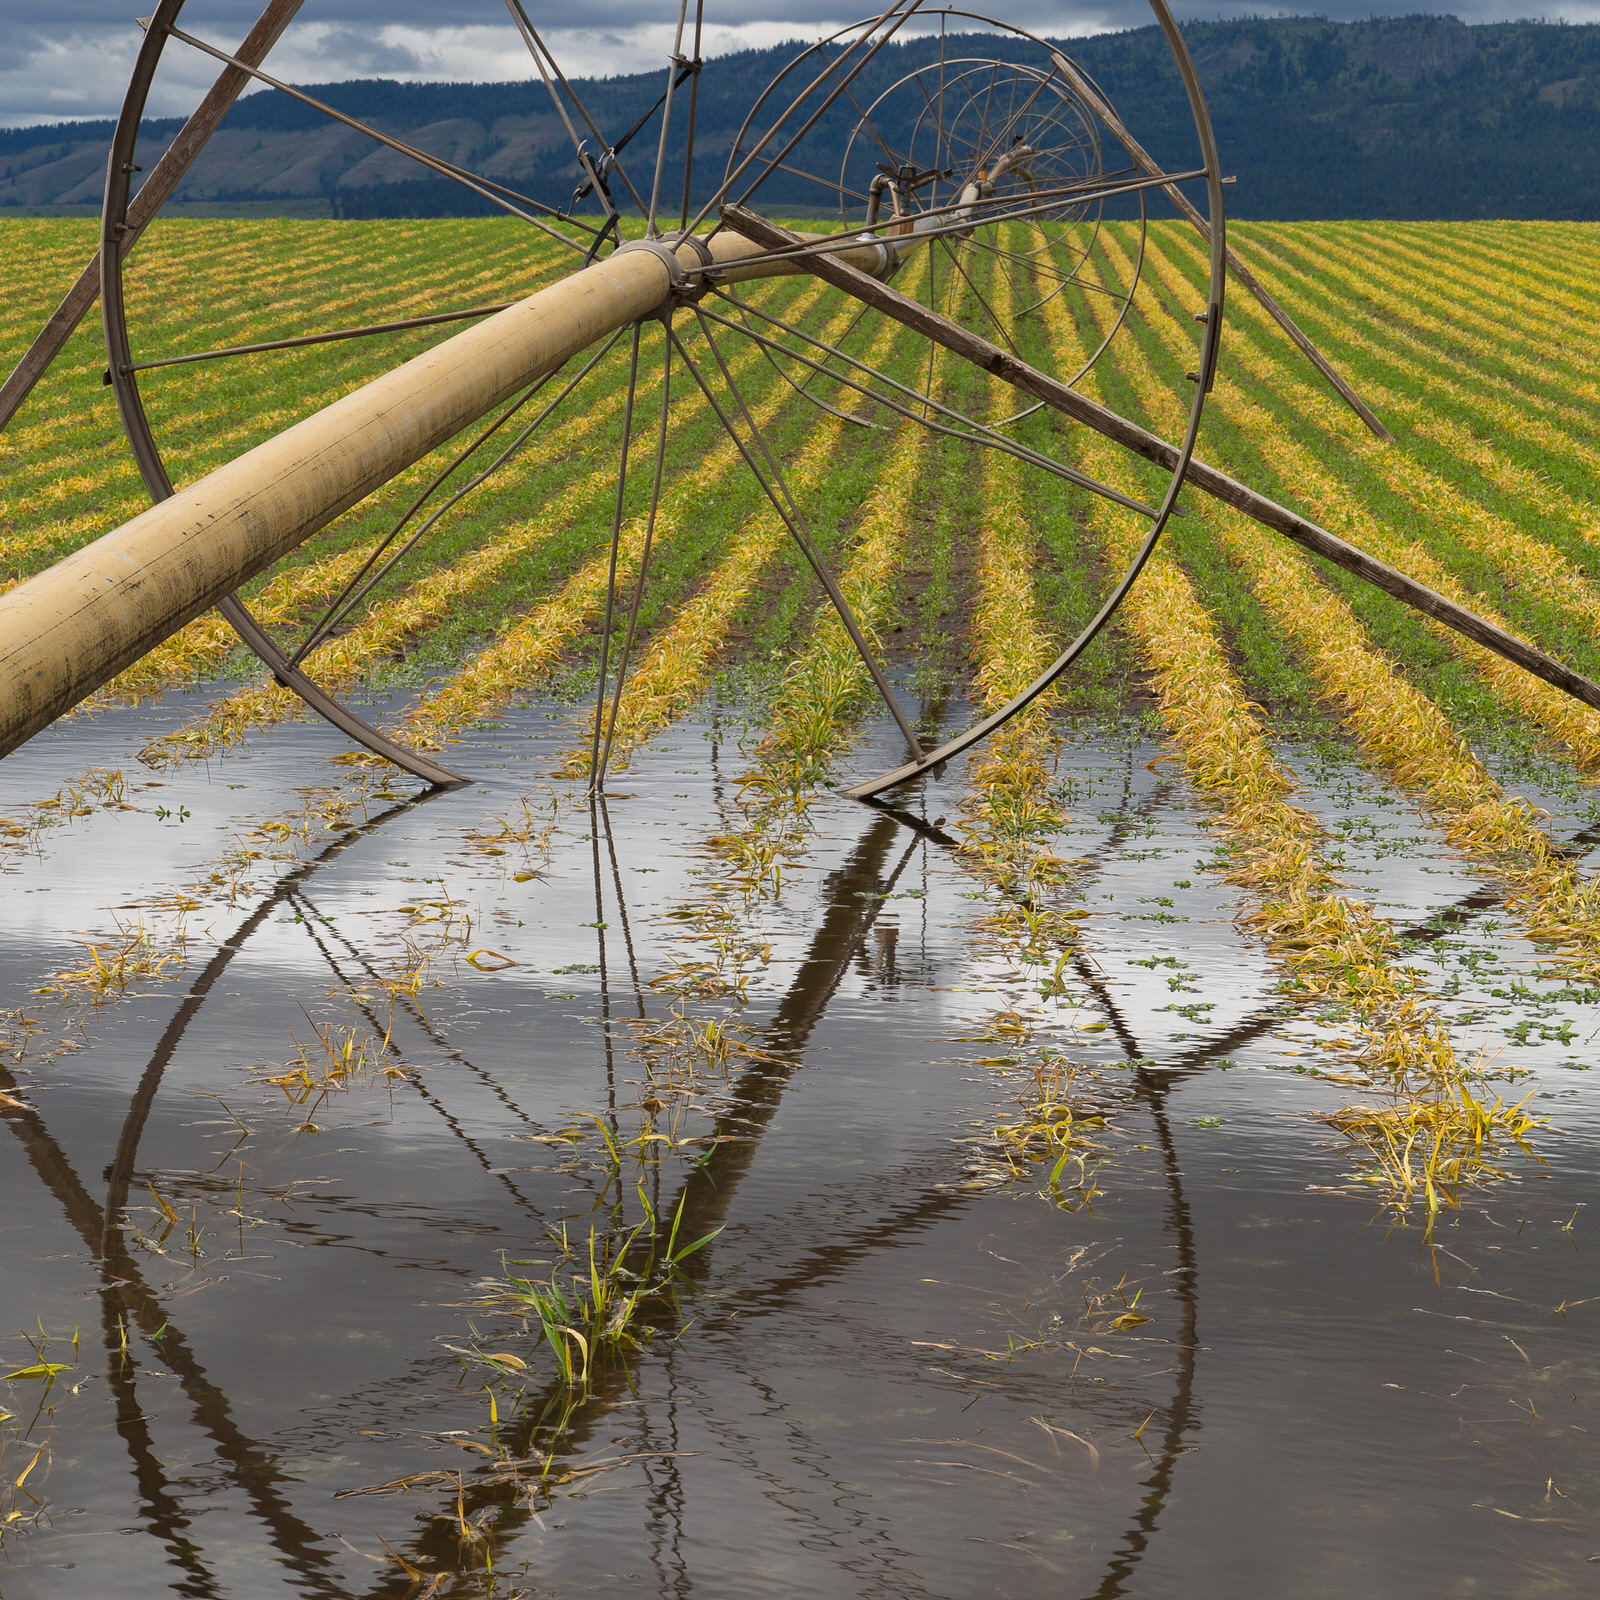  Irrigation wheel line in a field in eastern Oregon 